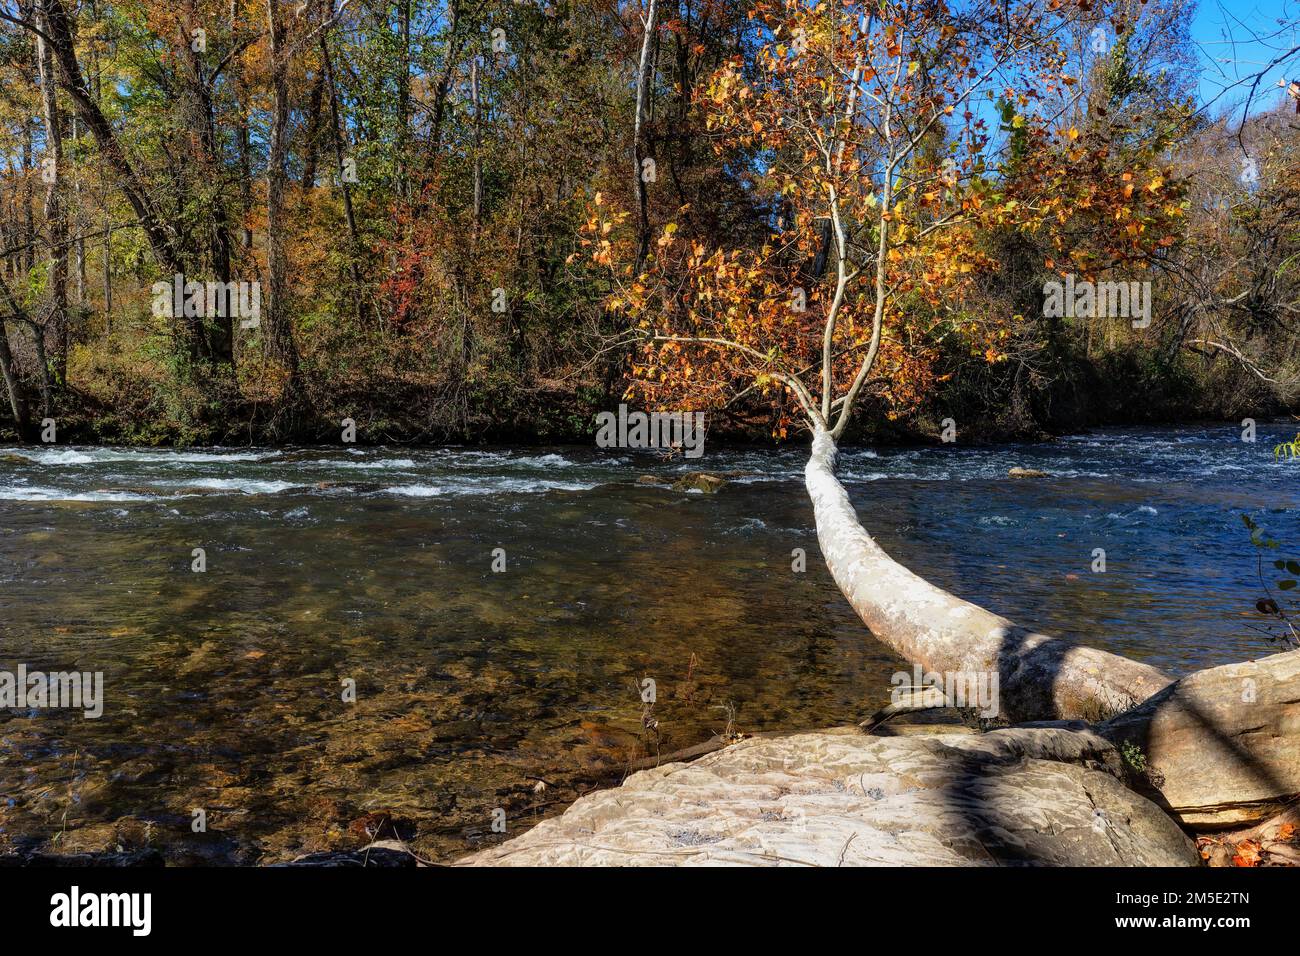 Un arbre semble sortir d'un rocher qui s'étend au-dessus de la rivière Watauga dans cette scène d'automne au parc national de Sycamore Shoals à Elizabethton, Tennessee, États-Unis Banque D'Images